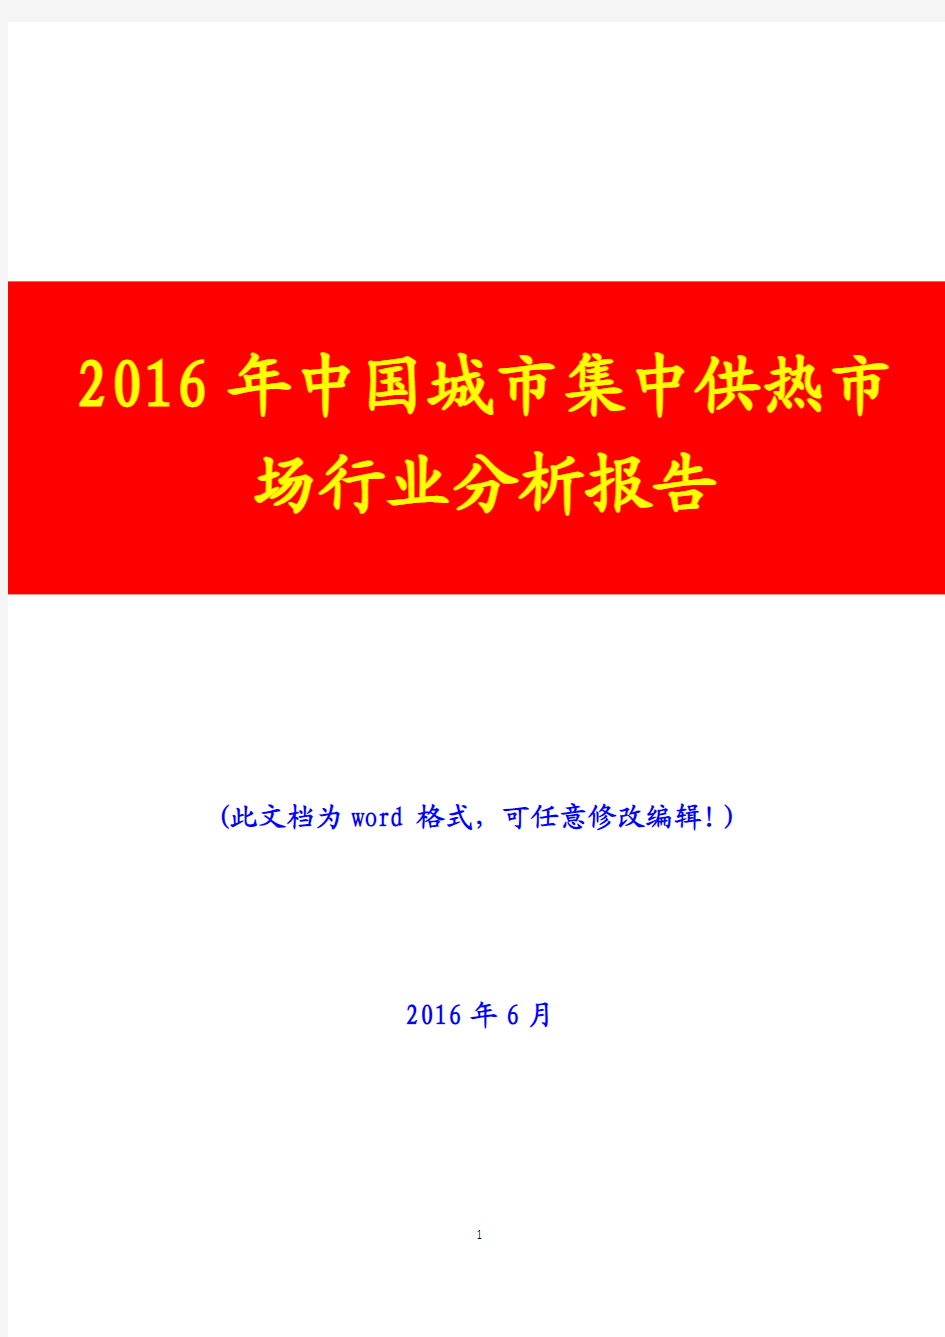 2016年中国城市集中供热市场行业分析报告(完美版)